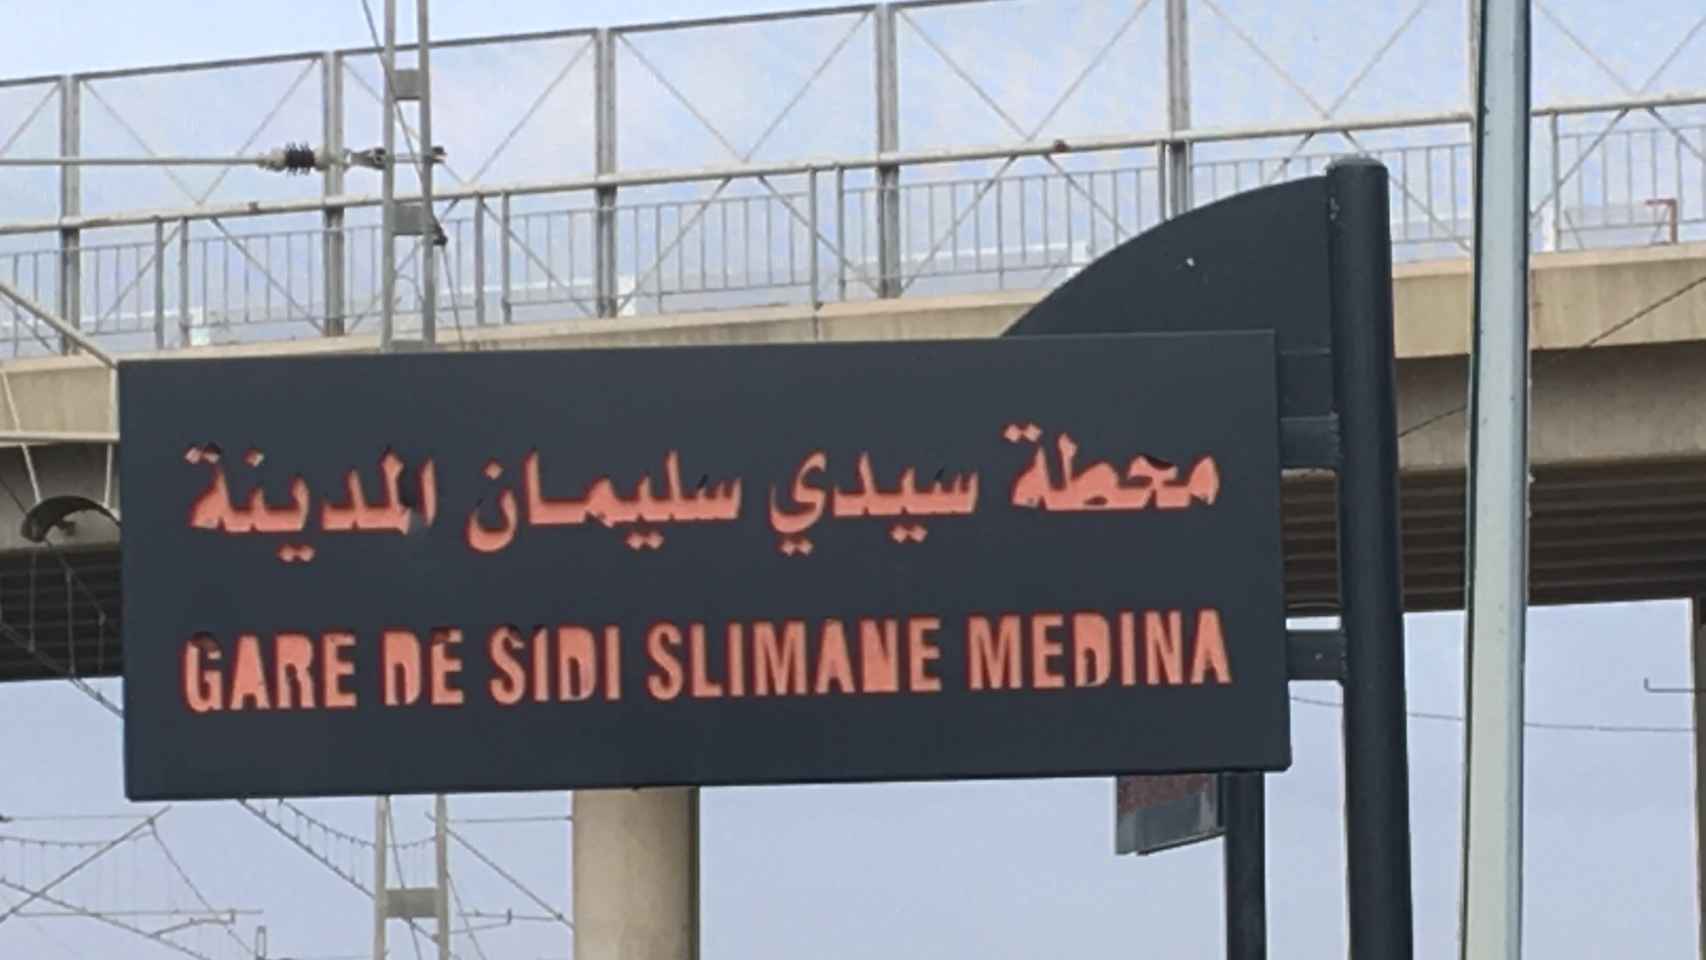 Estación de tren de Sidi Slimane